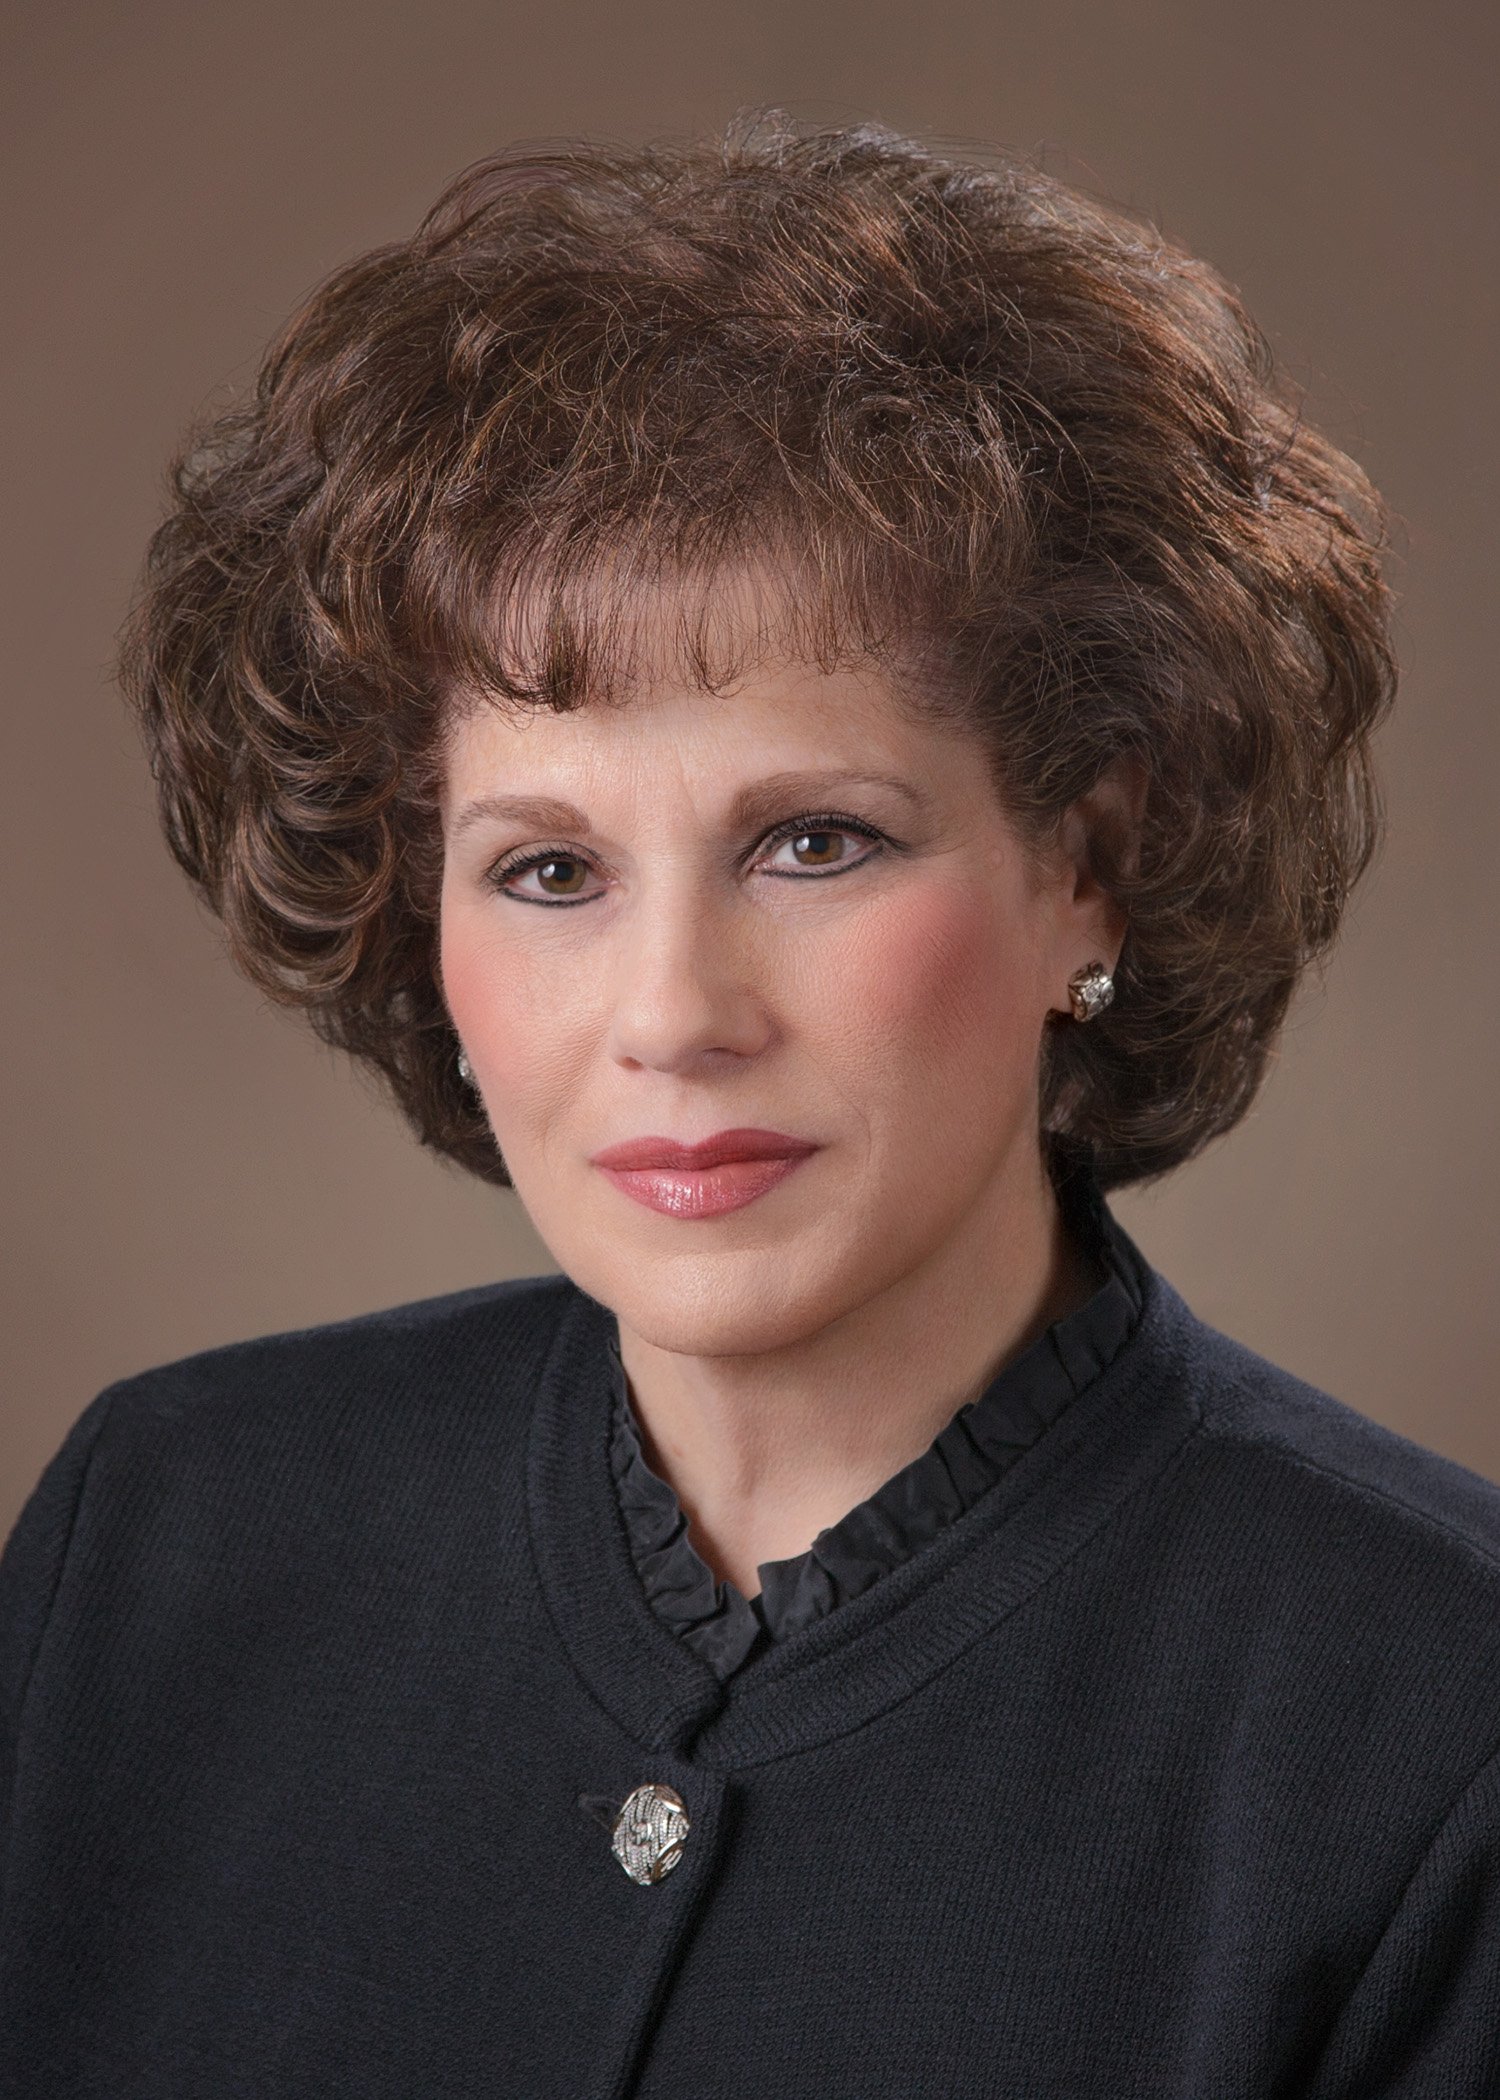 Wendy Katz